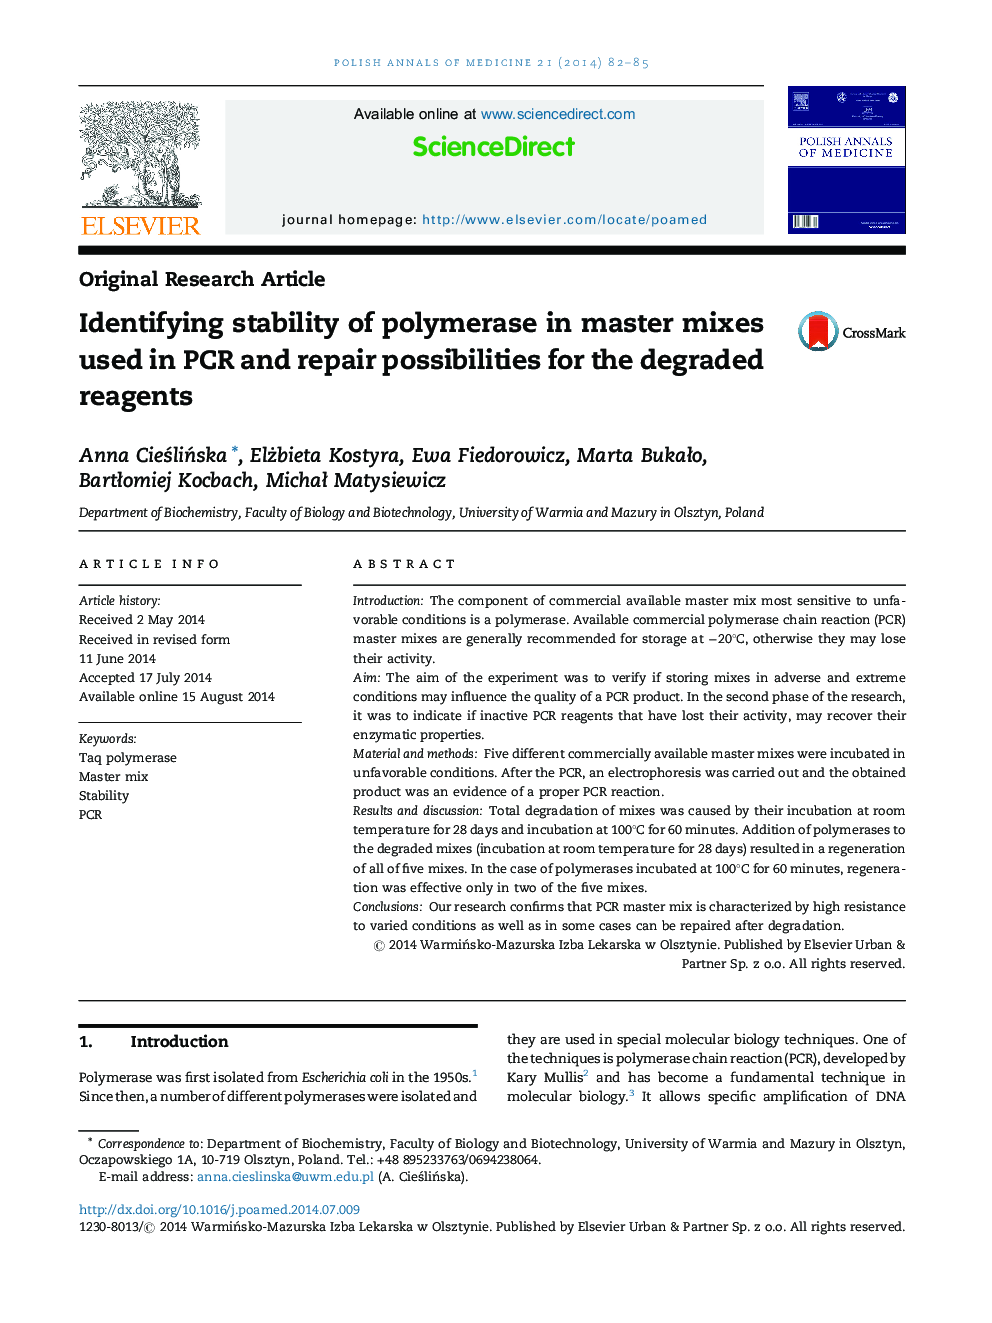 شناسایی پایداری پلیمراز در مخلوط های اصلی مورداستفاده در PCR و قابلیت های تعمیر برای واکنش های تجزیه شده